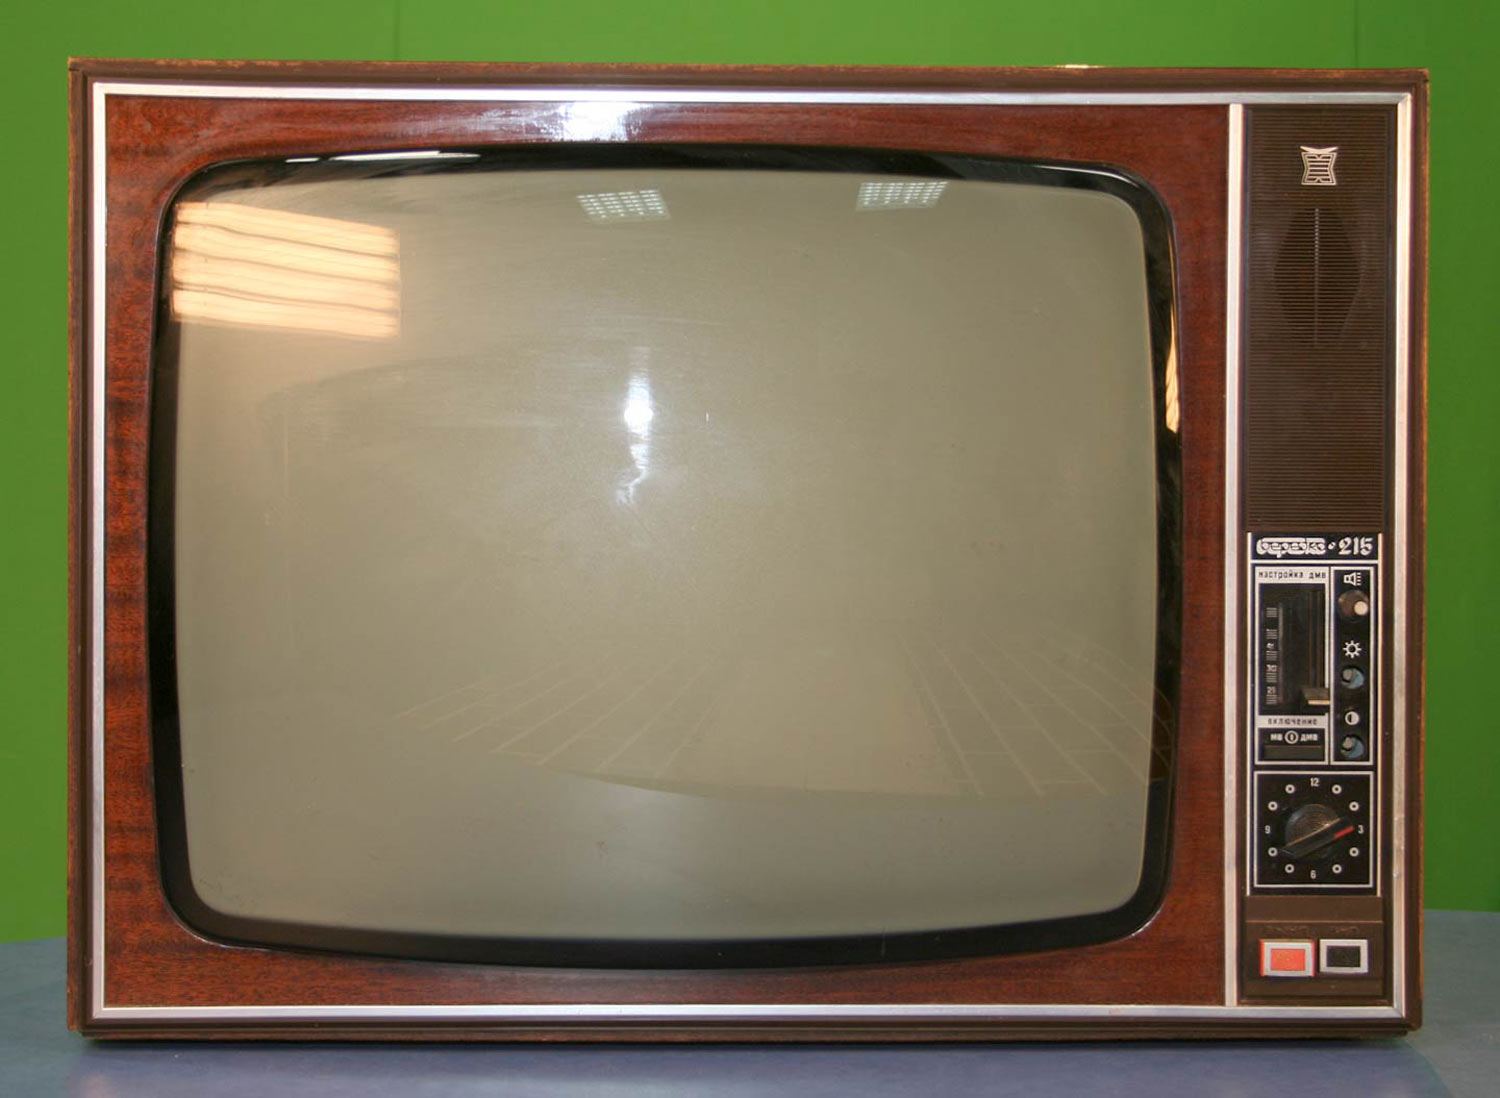 Куплю телевизор старый оскол. Телевизор Березка 215. Телевизор Березка 215 черно-белый. Телевизор Горизонт 716. Цветной телевизор Березка 80х.